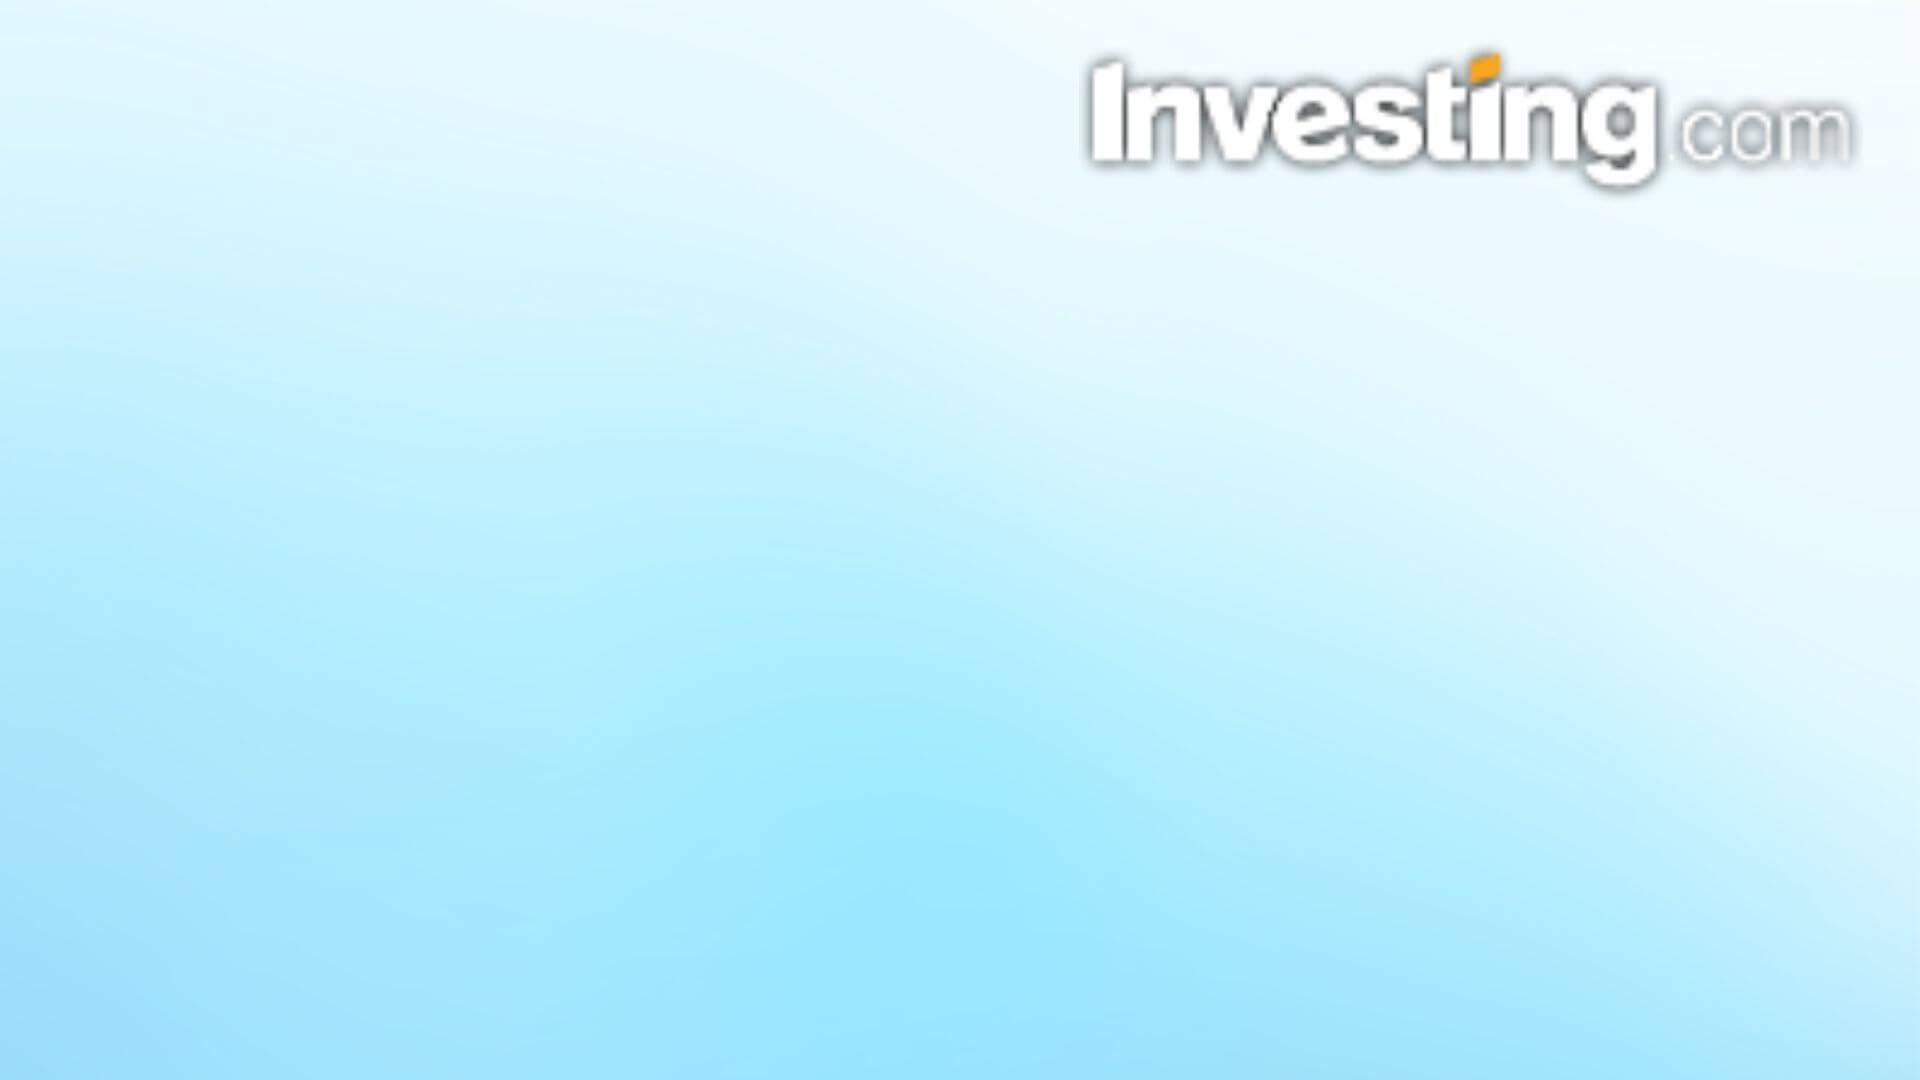 Investing.com logo